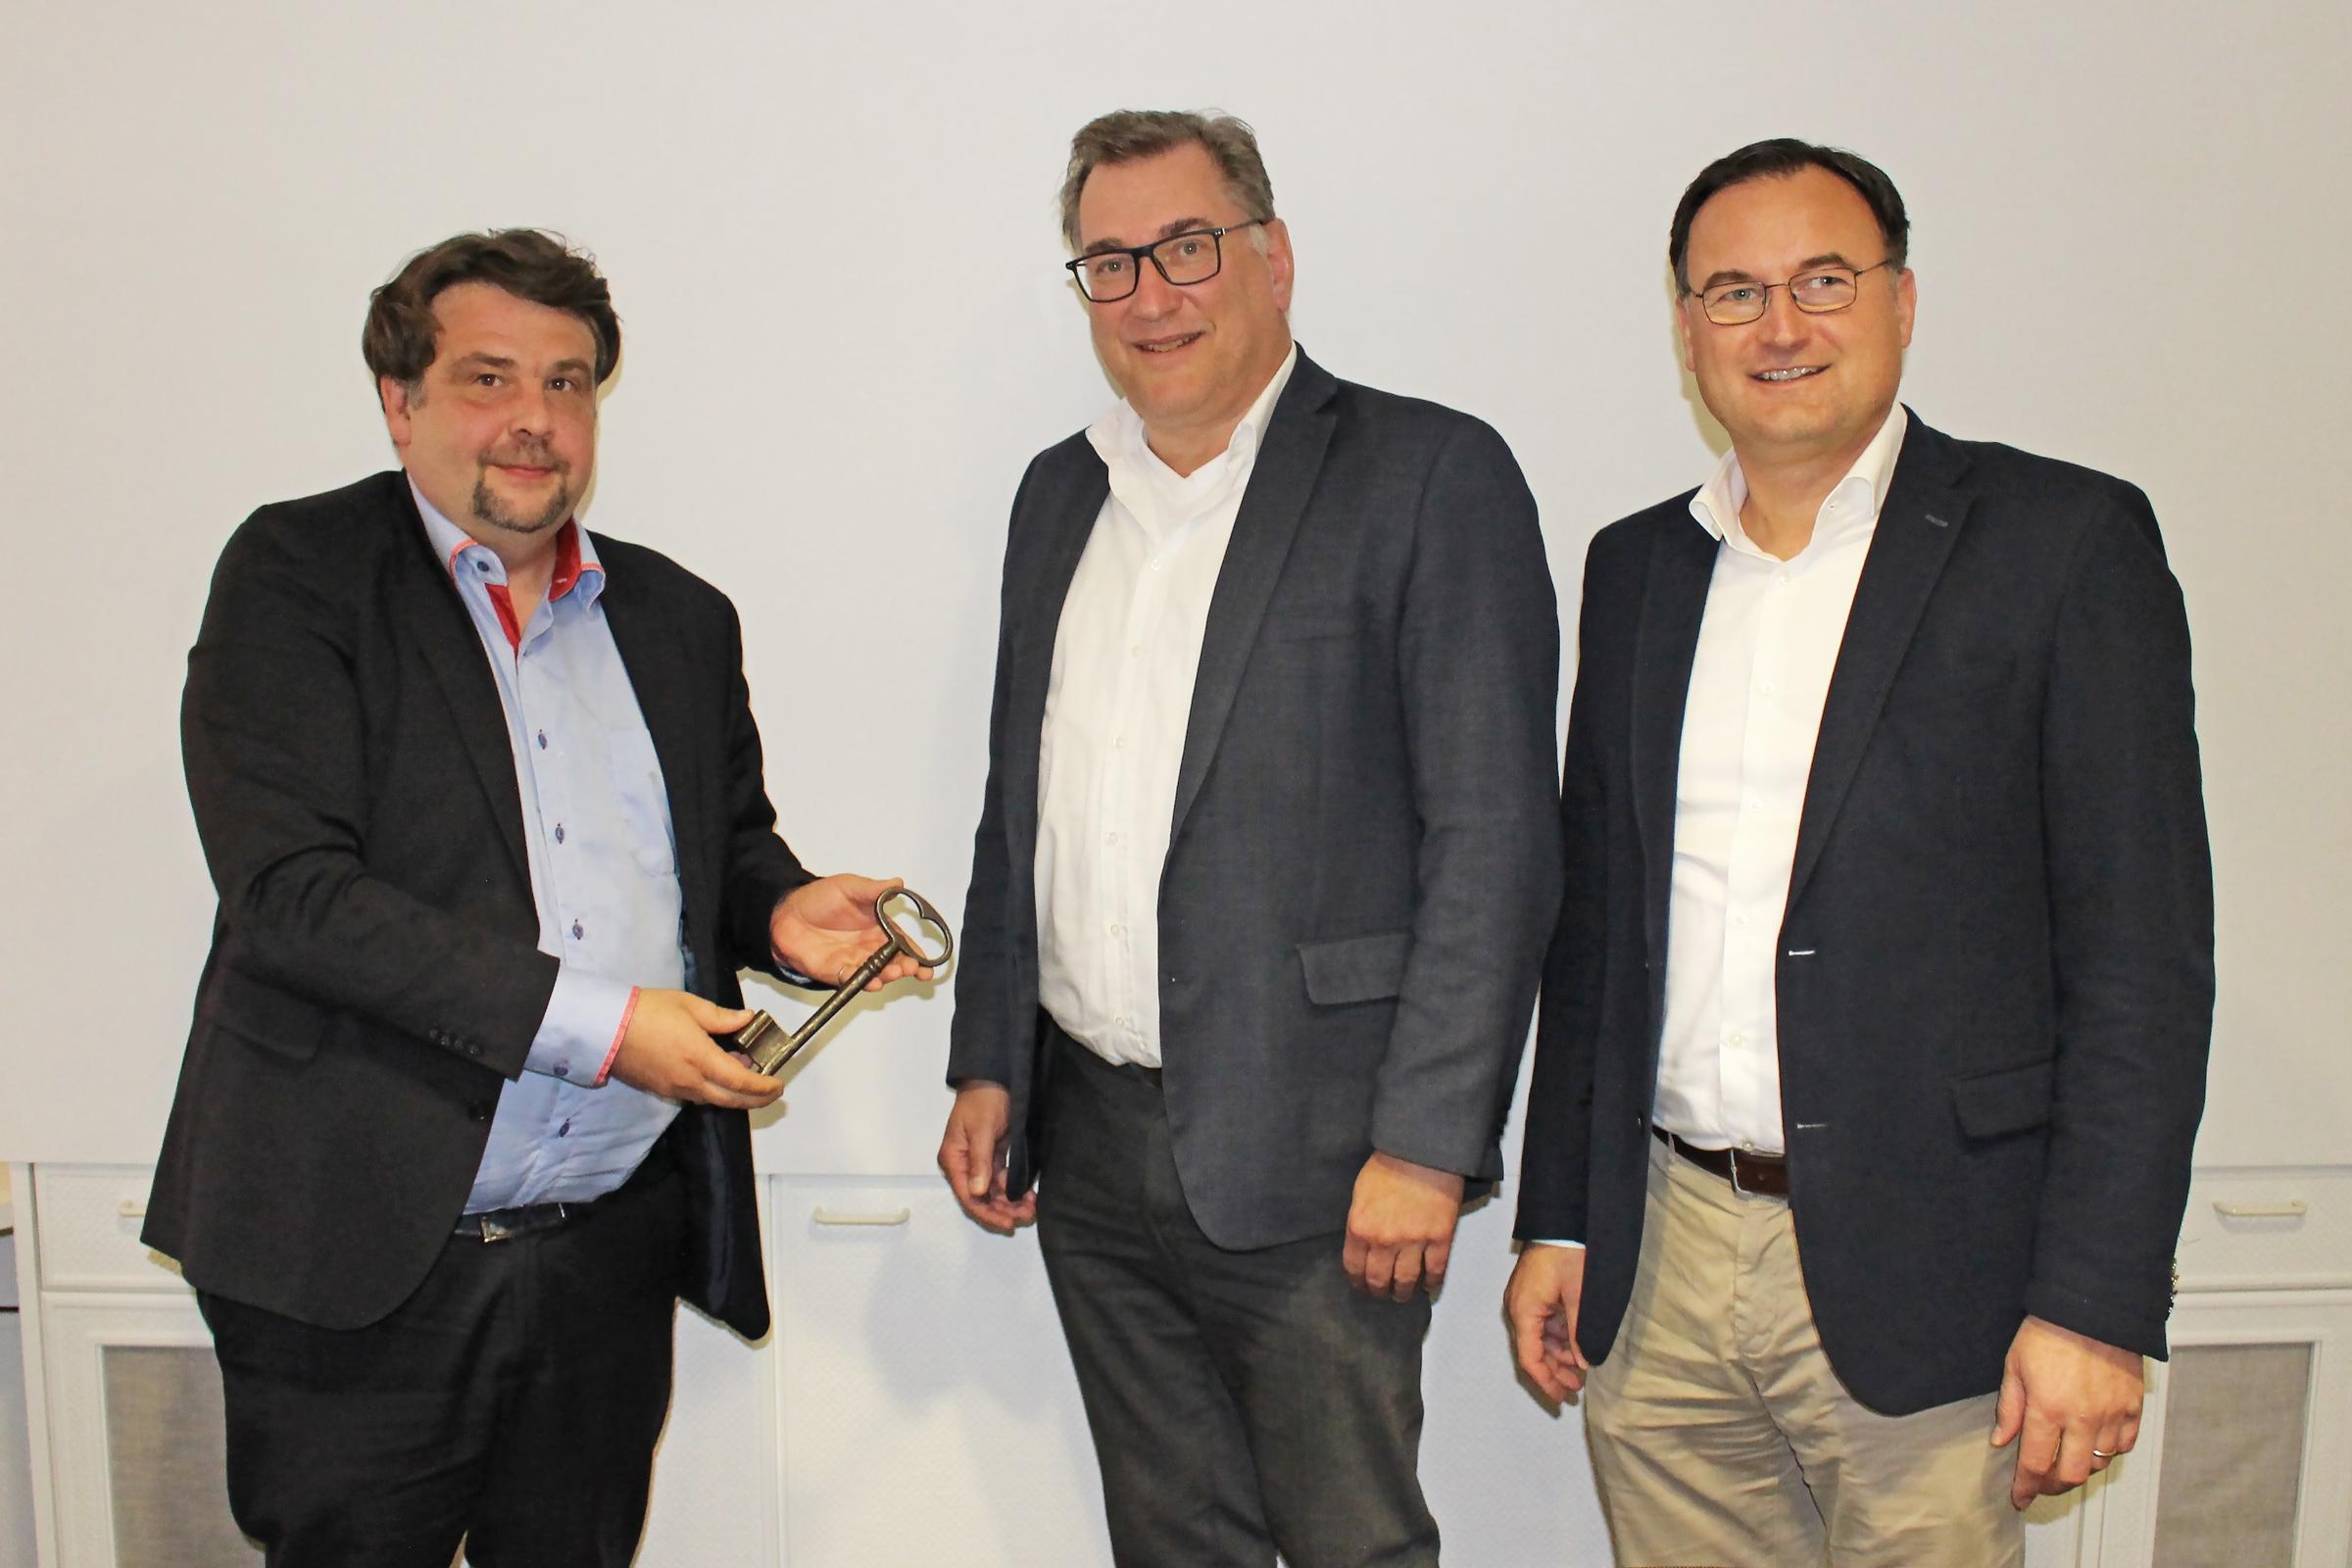 Der europaabgeordnete Dennis Radtke (1.v.l.) trifft mit mit FVSB-Geschäftsführer Stephan Schmidt (2.v.l.) und dem FVSB-Vorsitzenden Karl Kristian Woelm (3.v.l.), geschäftsführender Gesellschafter der Woelm GmbH, im Verbandshaus zusammen.